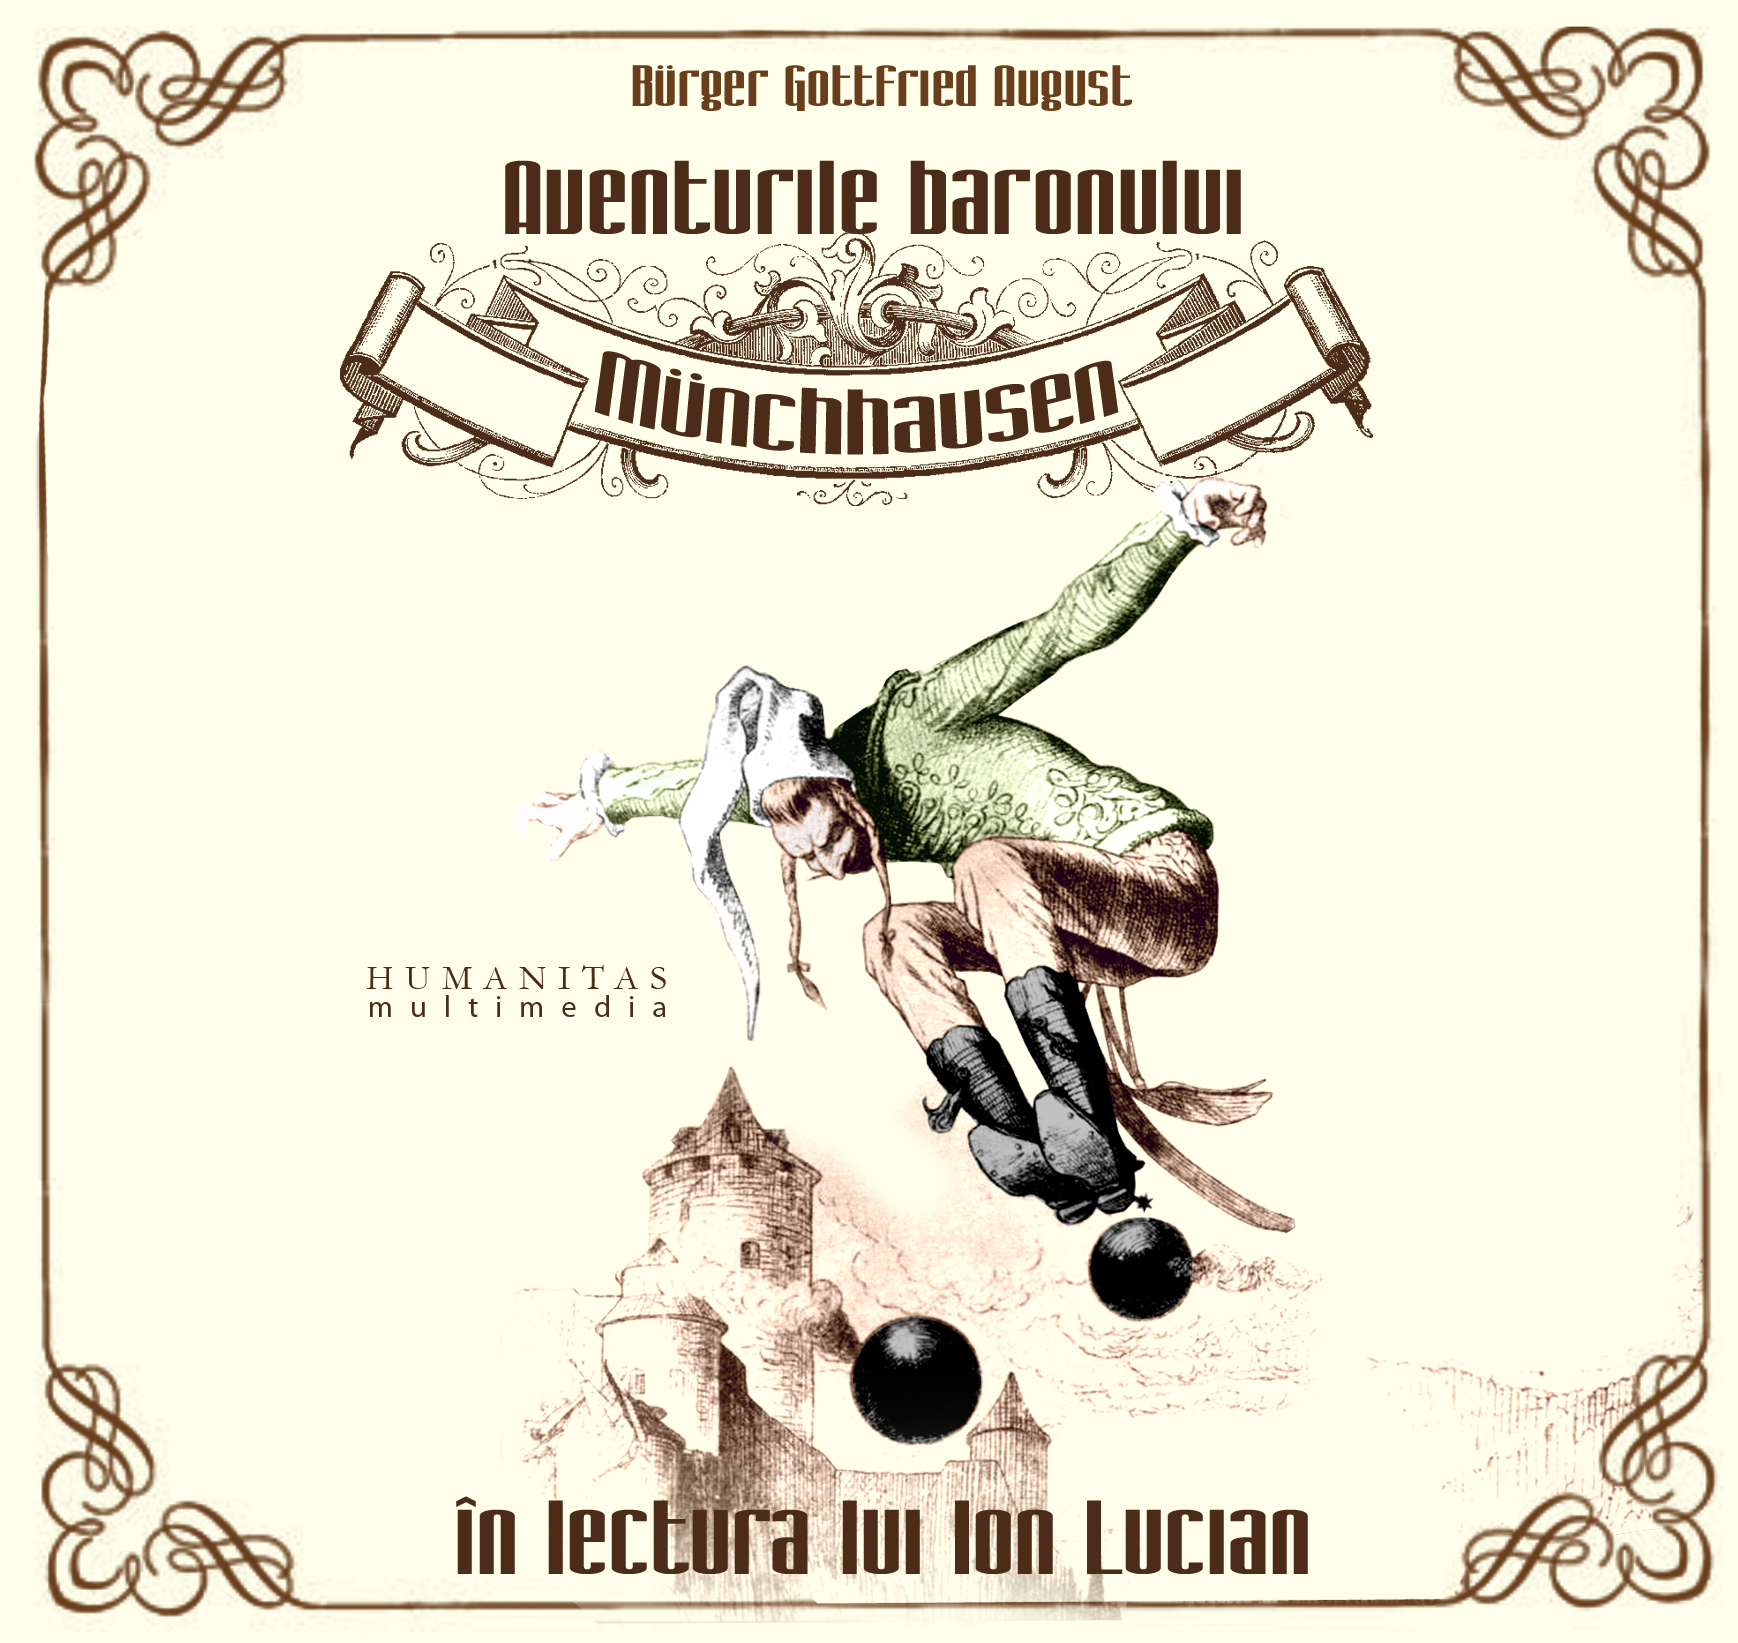 Audiobook CD - Aventurile baronului munchhausen in lectura lui ion lucian